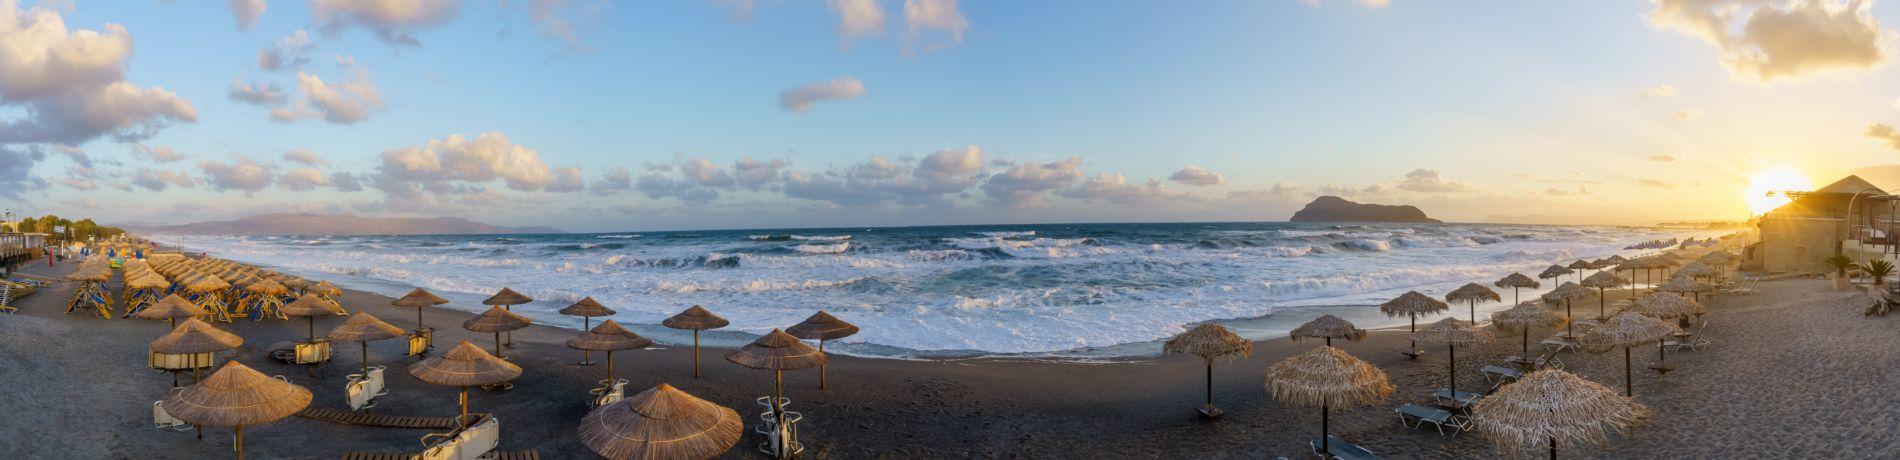 Spiaggia Platanias, Creta | Eden viaggi